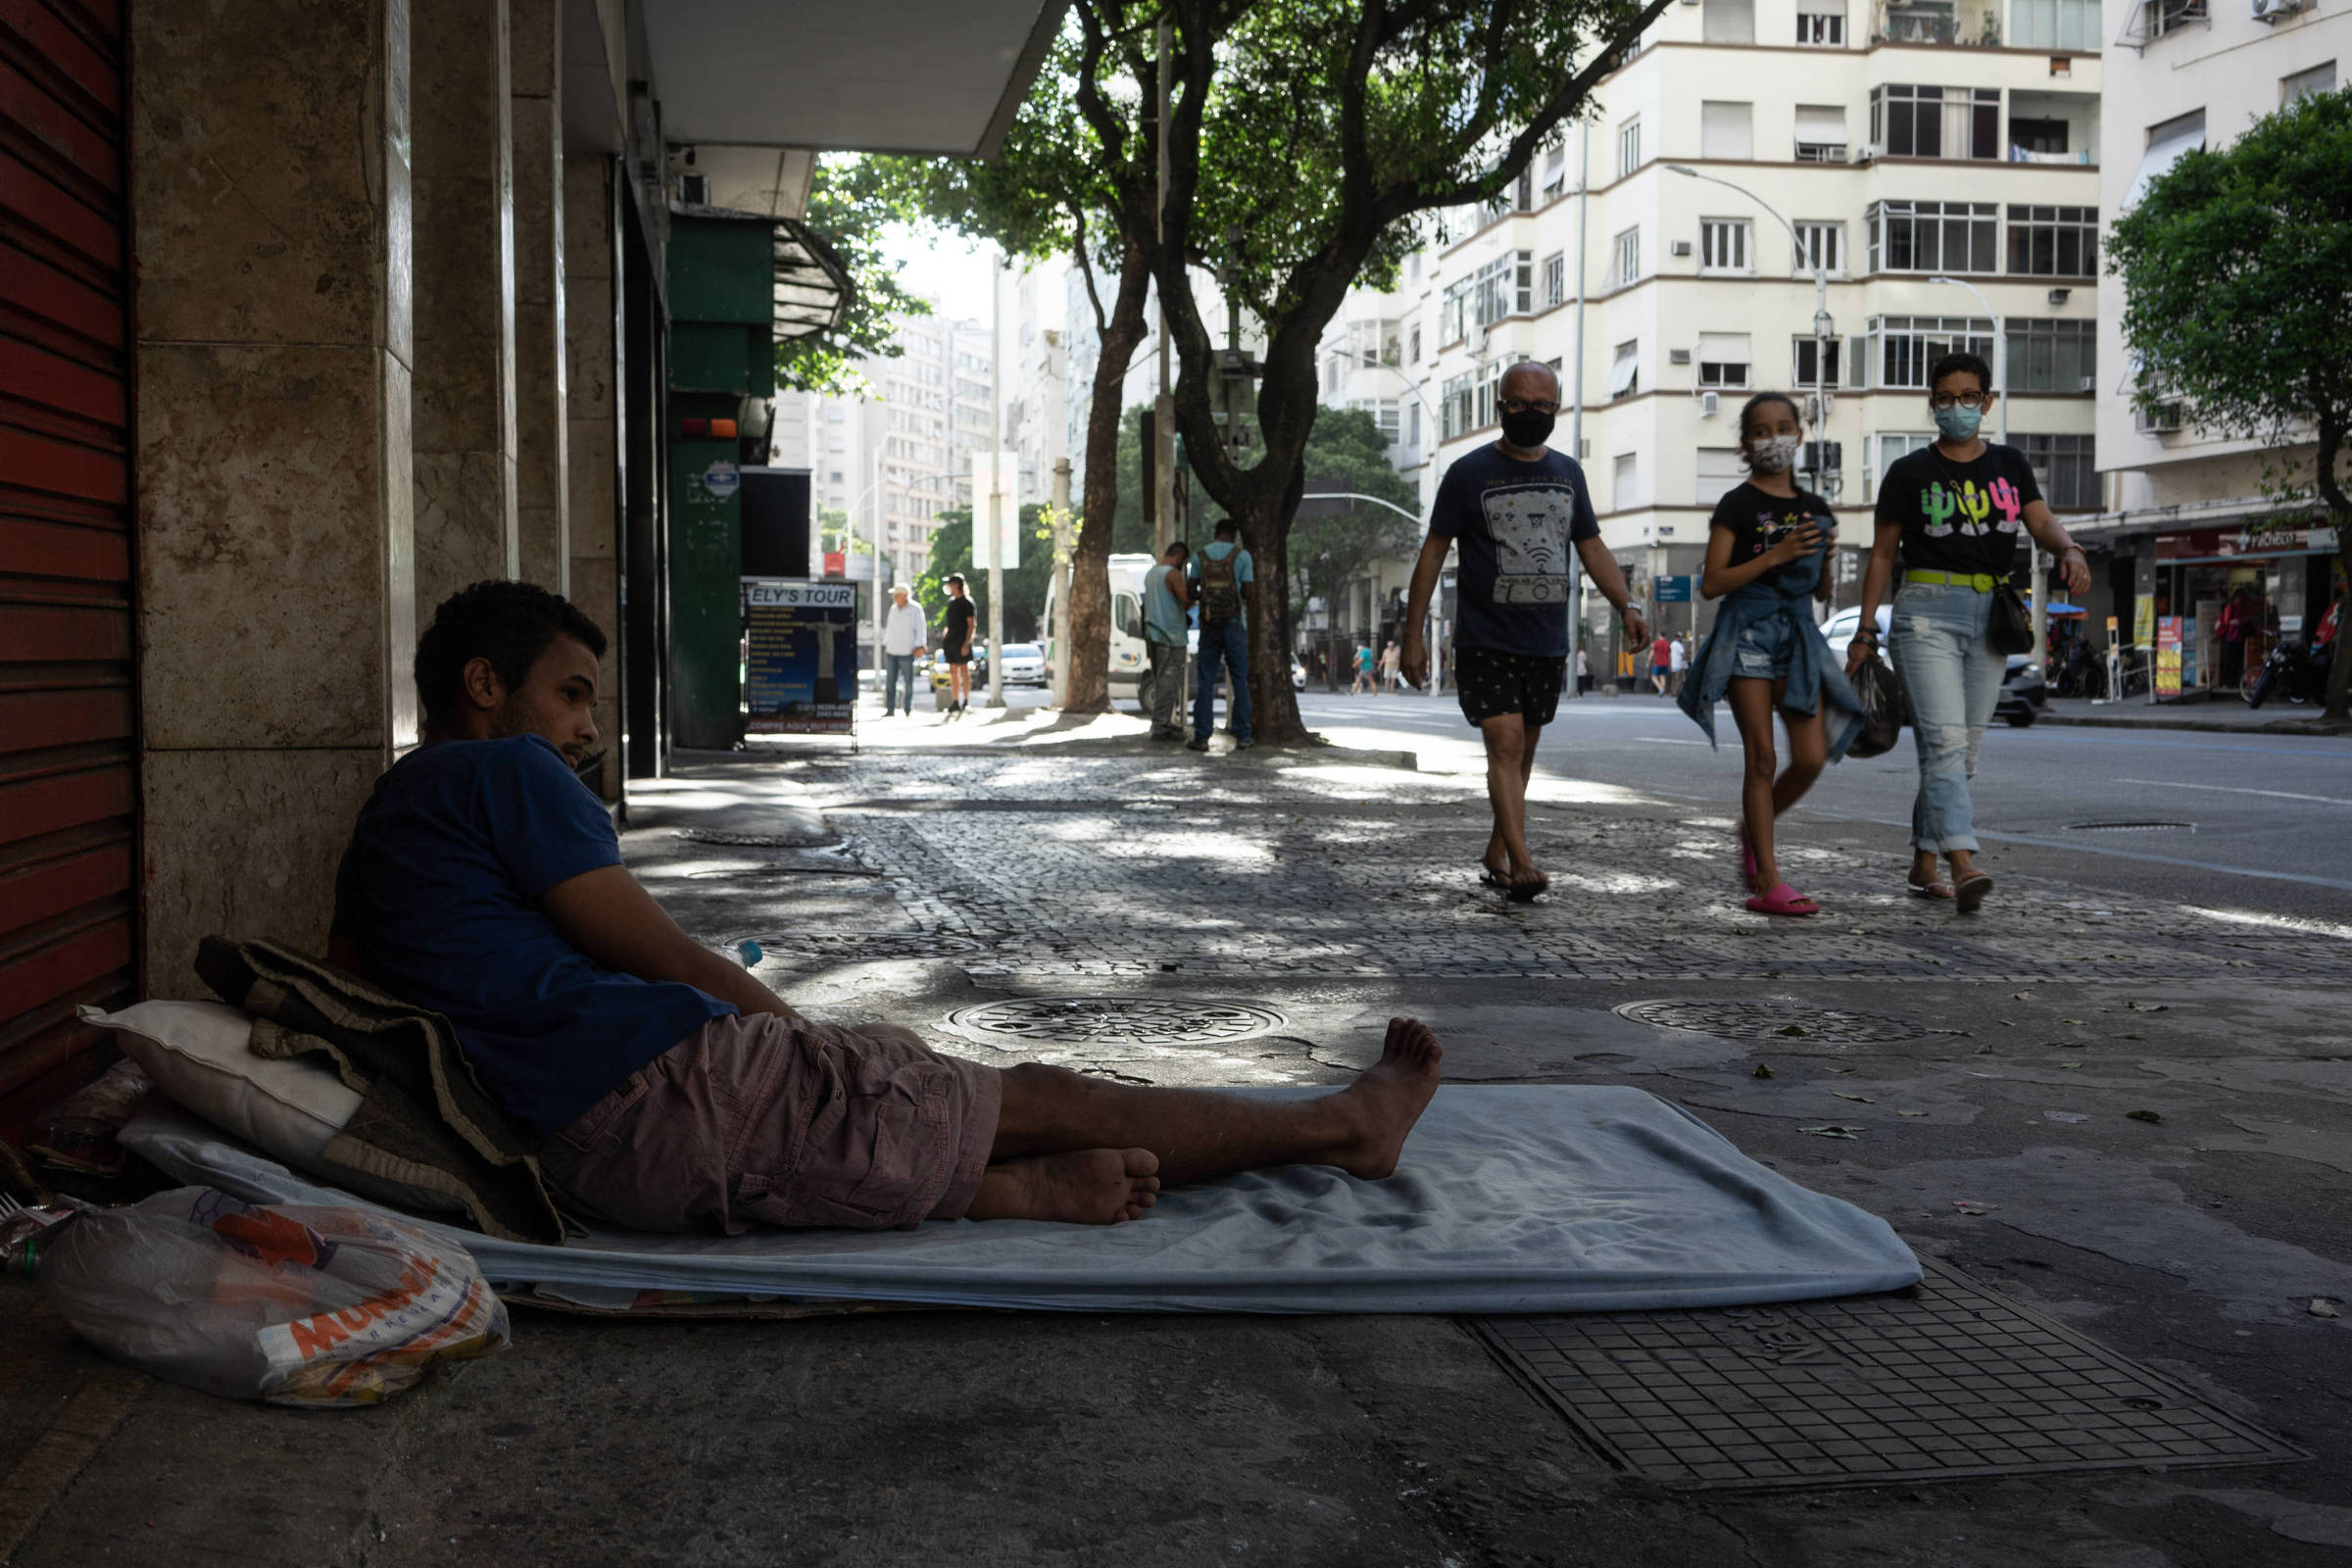 Moradores reclamam som alto e sexo em rua de cidade do Paraná